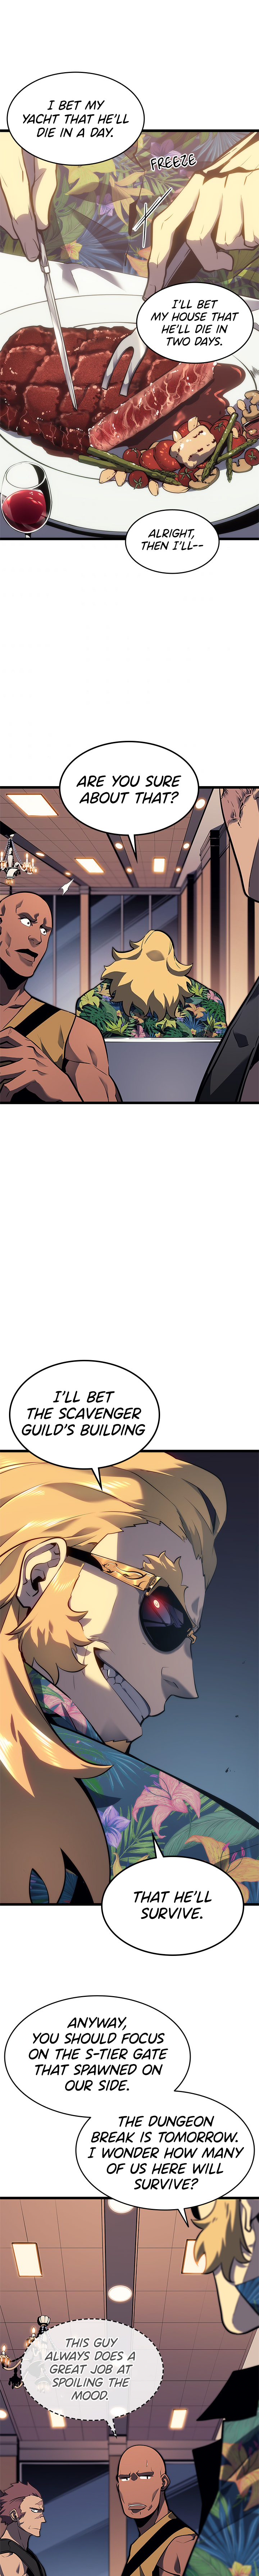 Solo Leveling Manga Manga Chapter - 134 - image 10